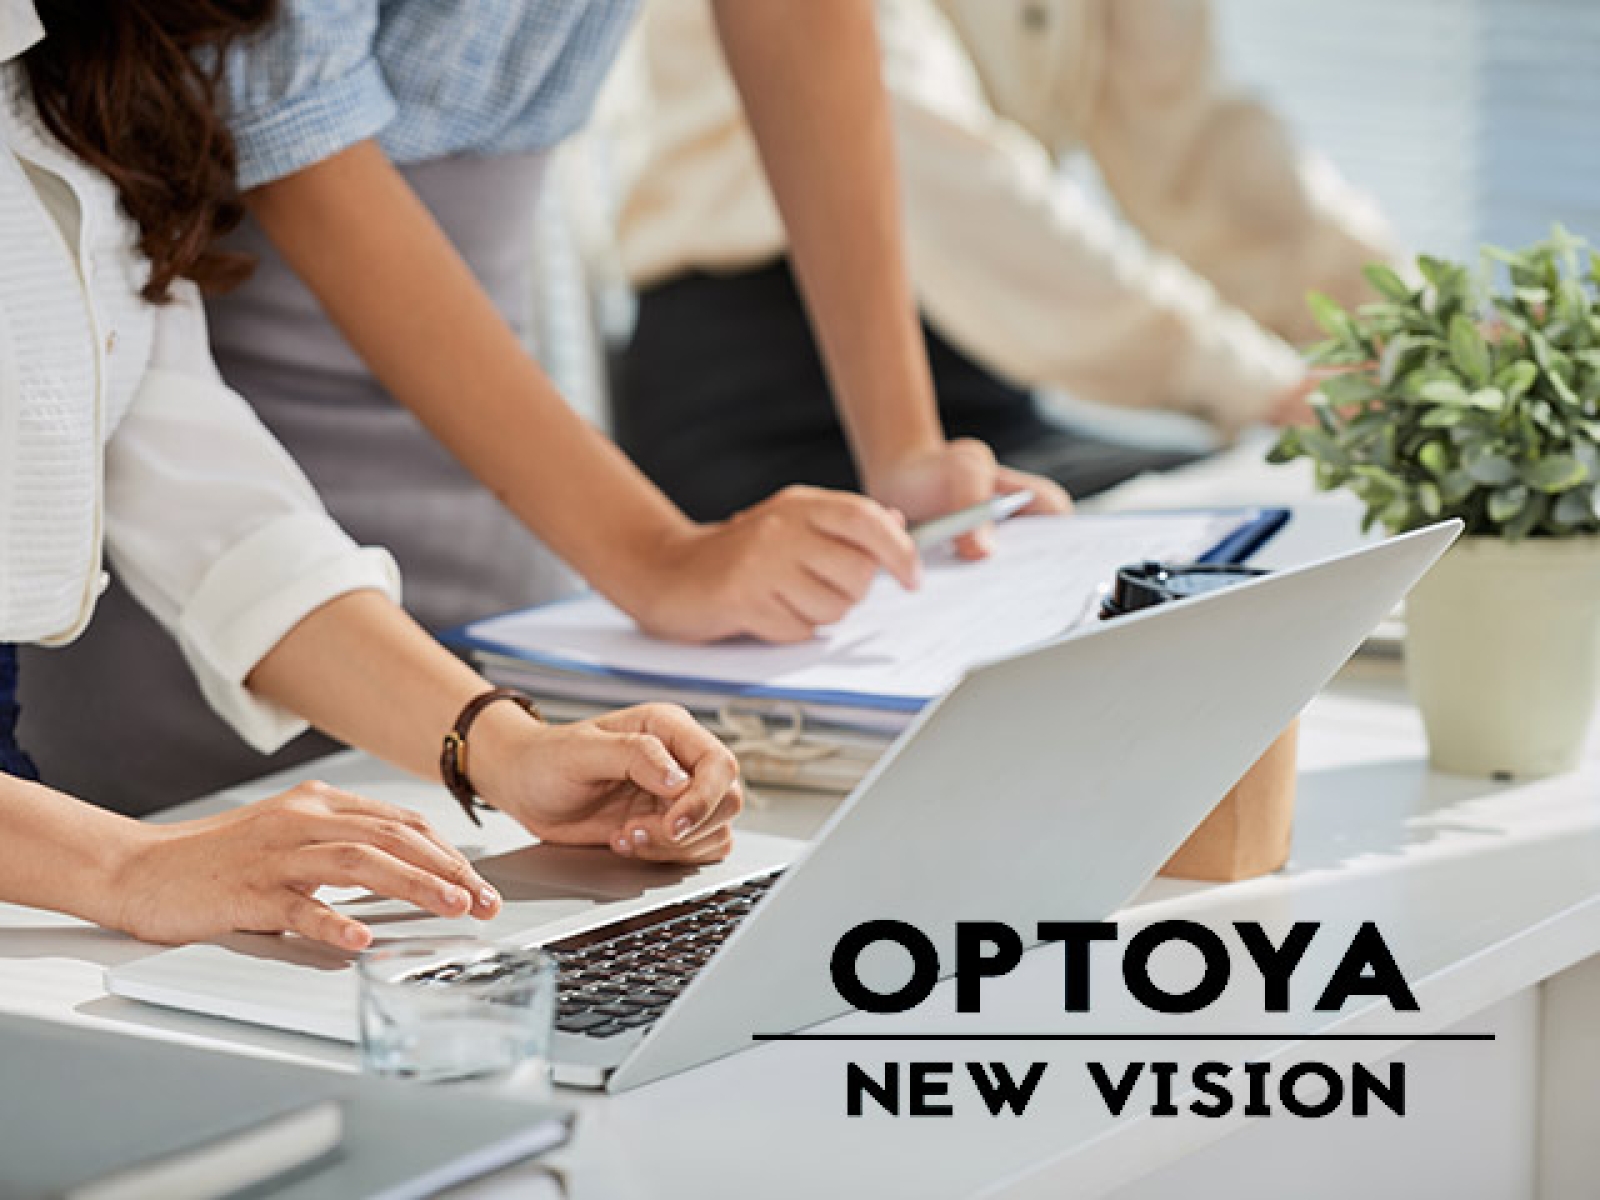 Η εταιρεία Optoya New Vision αναζητά συνεργάτες